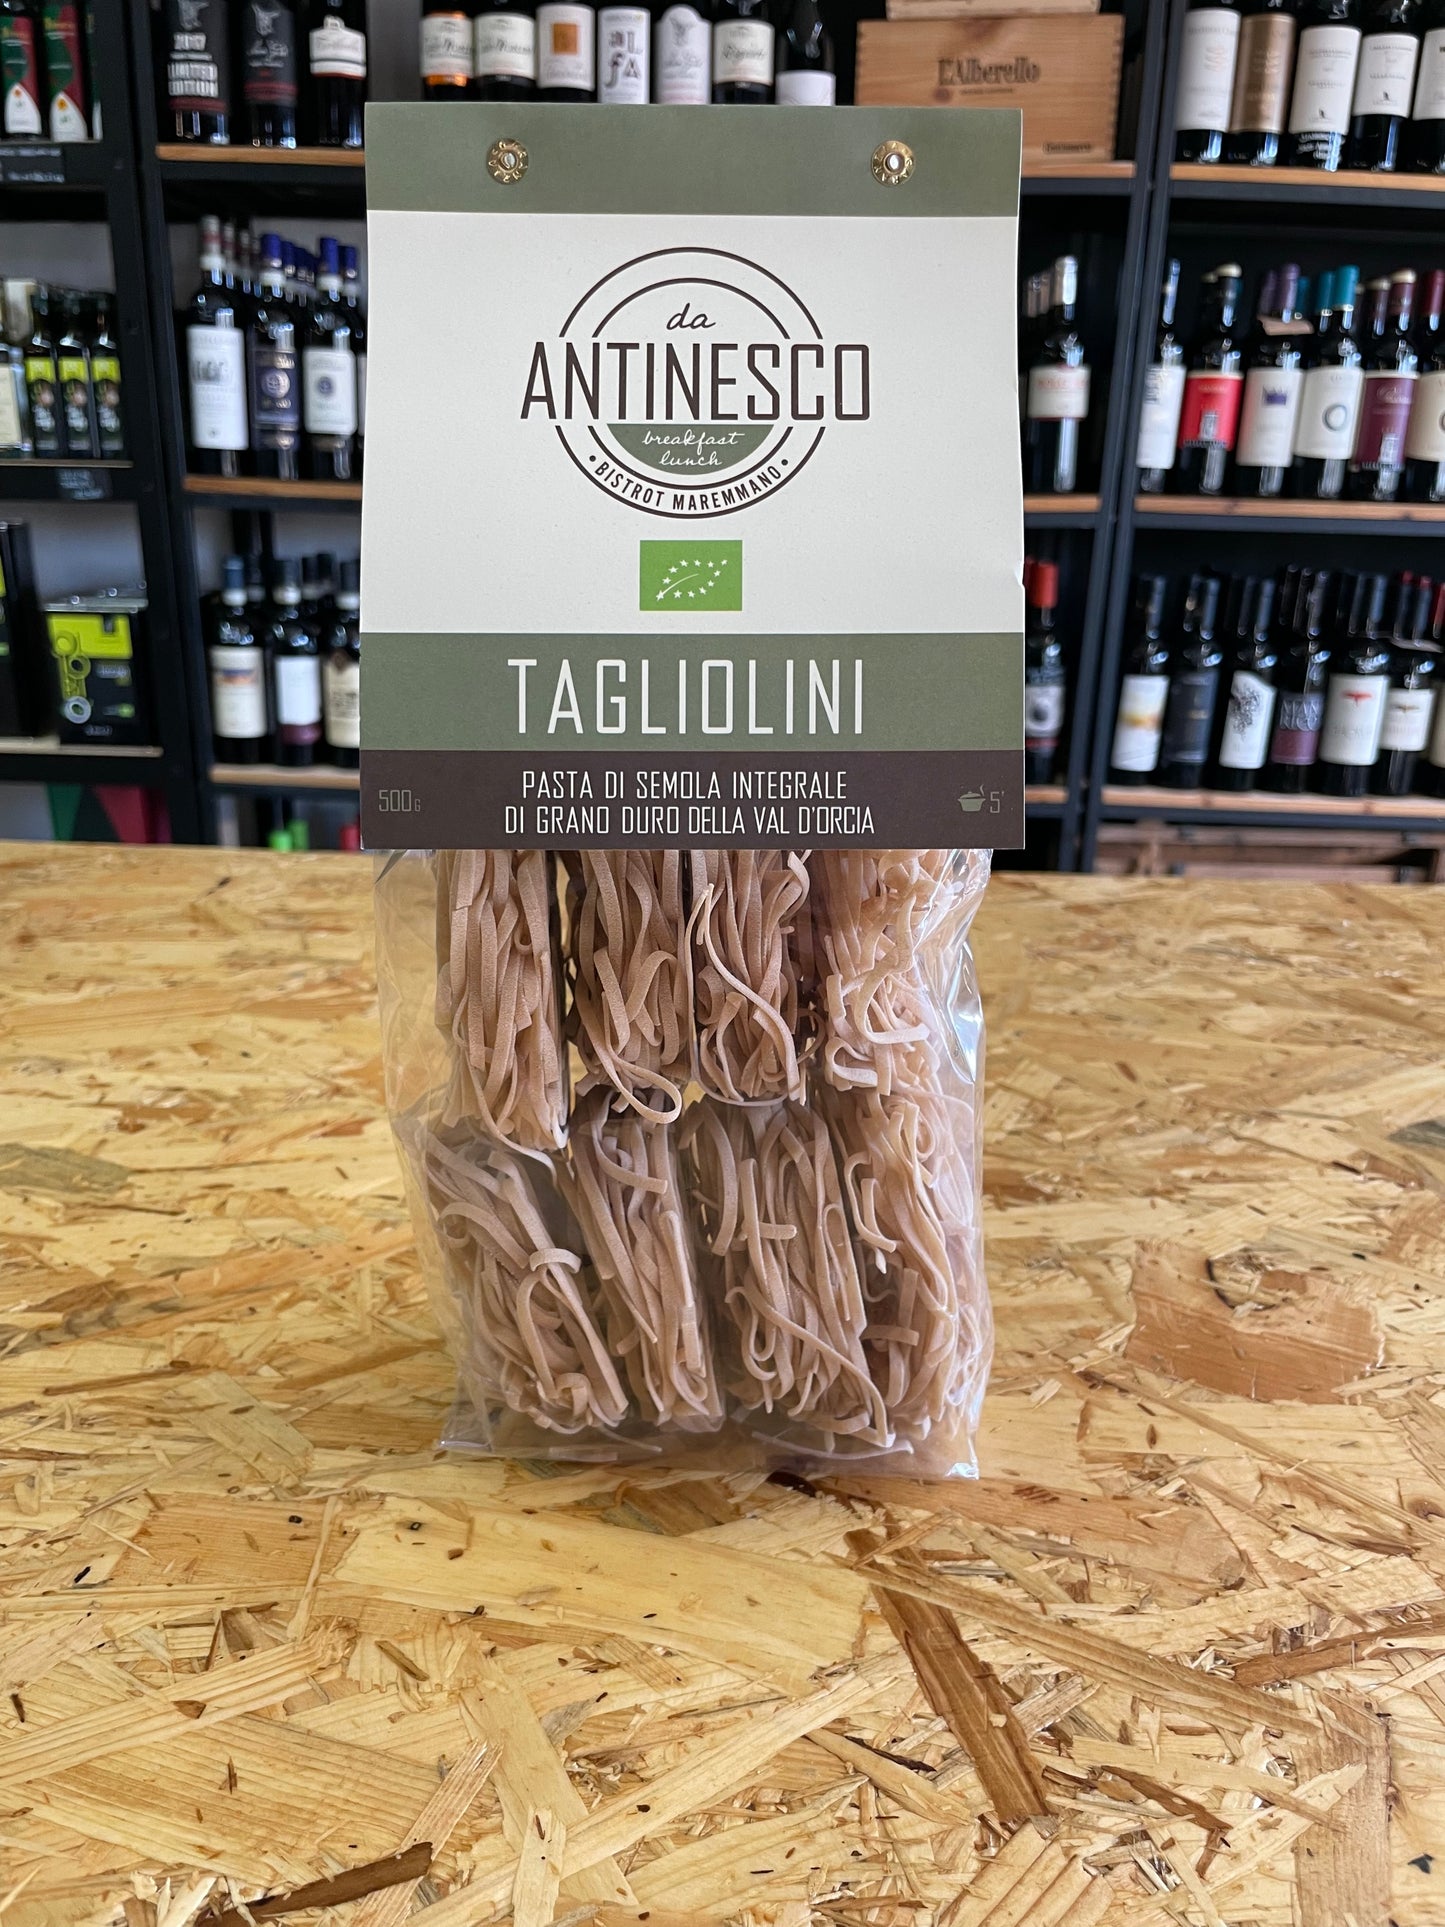 Pasta Tagliolini, da Antinesco